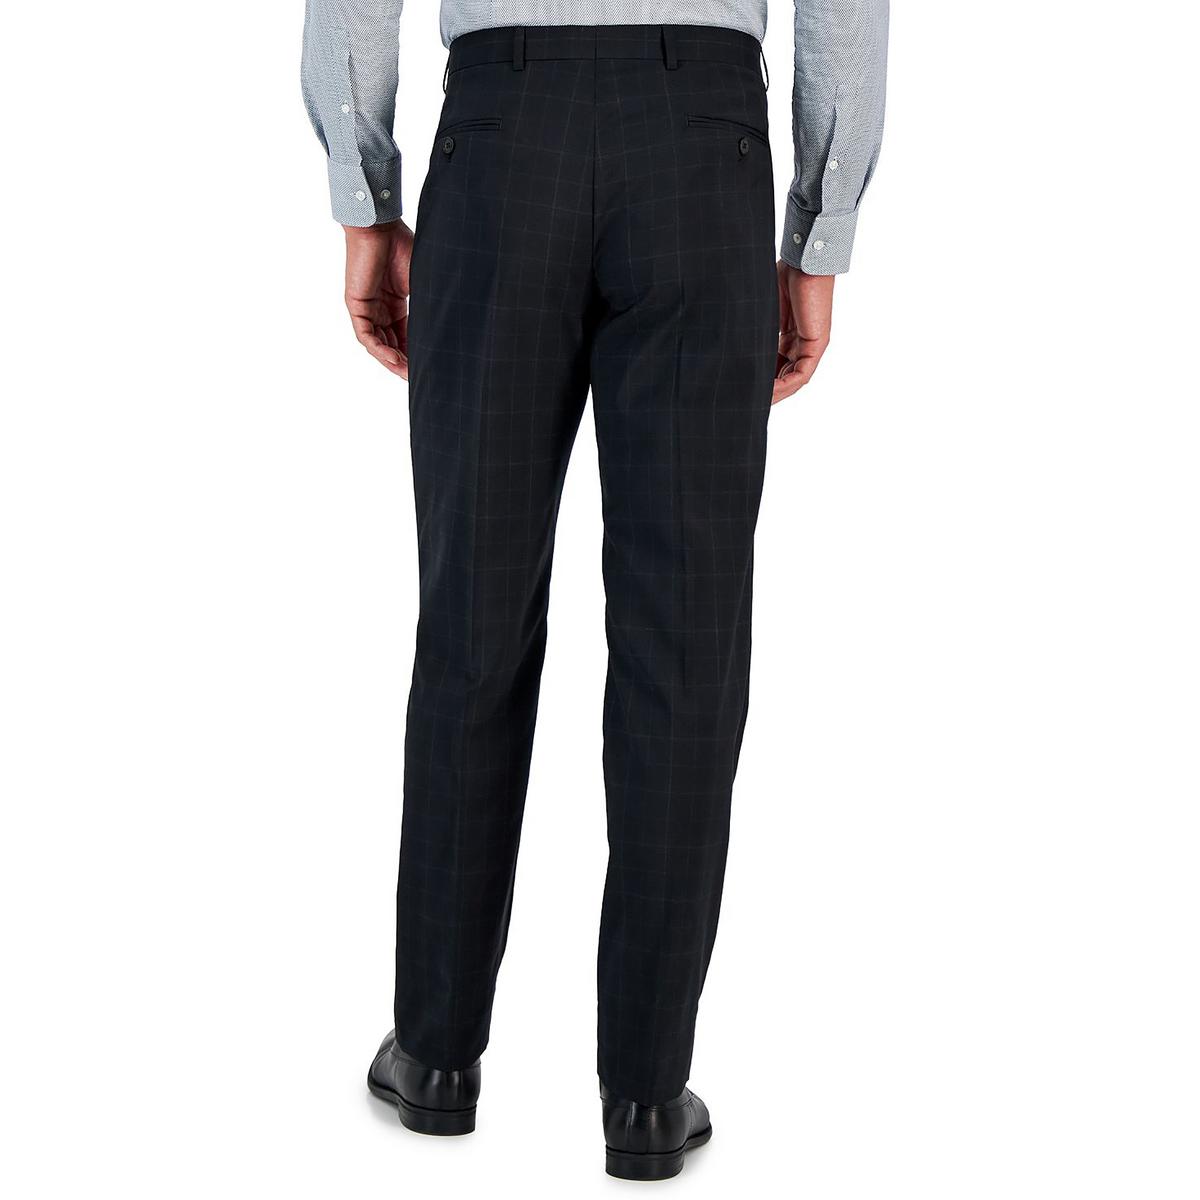 Armani Exchange ,Sports trousers MEN'S,BLACK,L | eBay